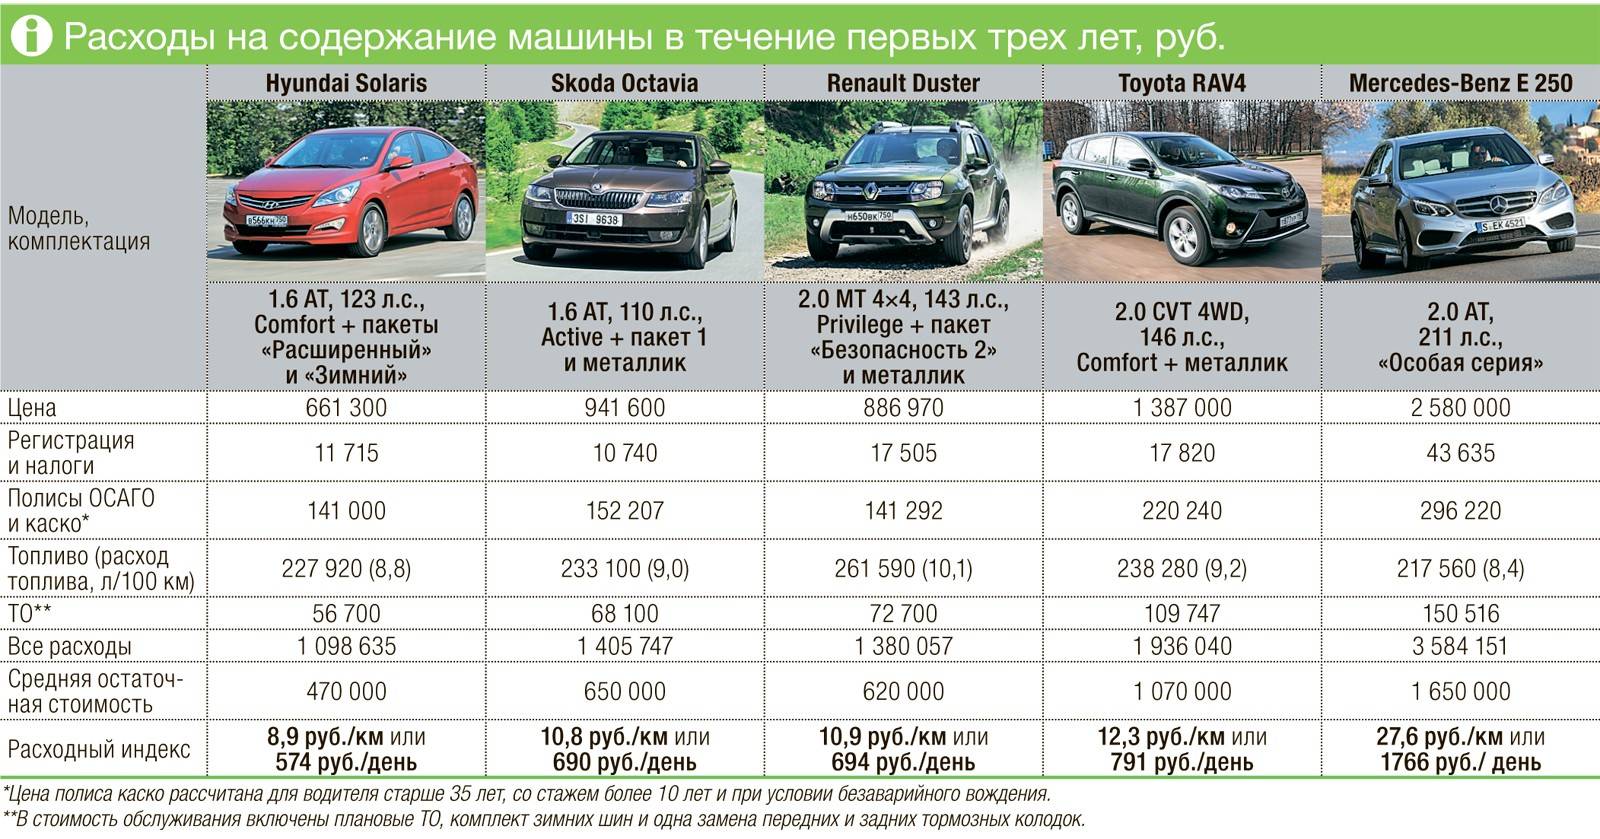 Стоит ли покупать машину? | kak-kupit-auto.ru